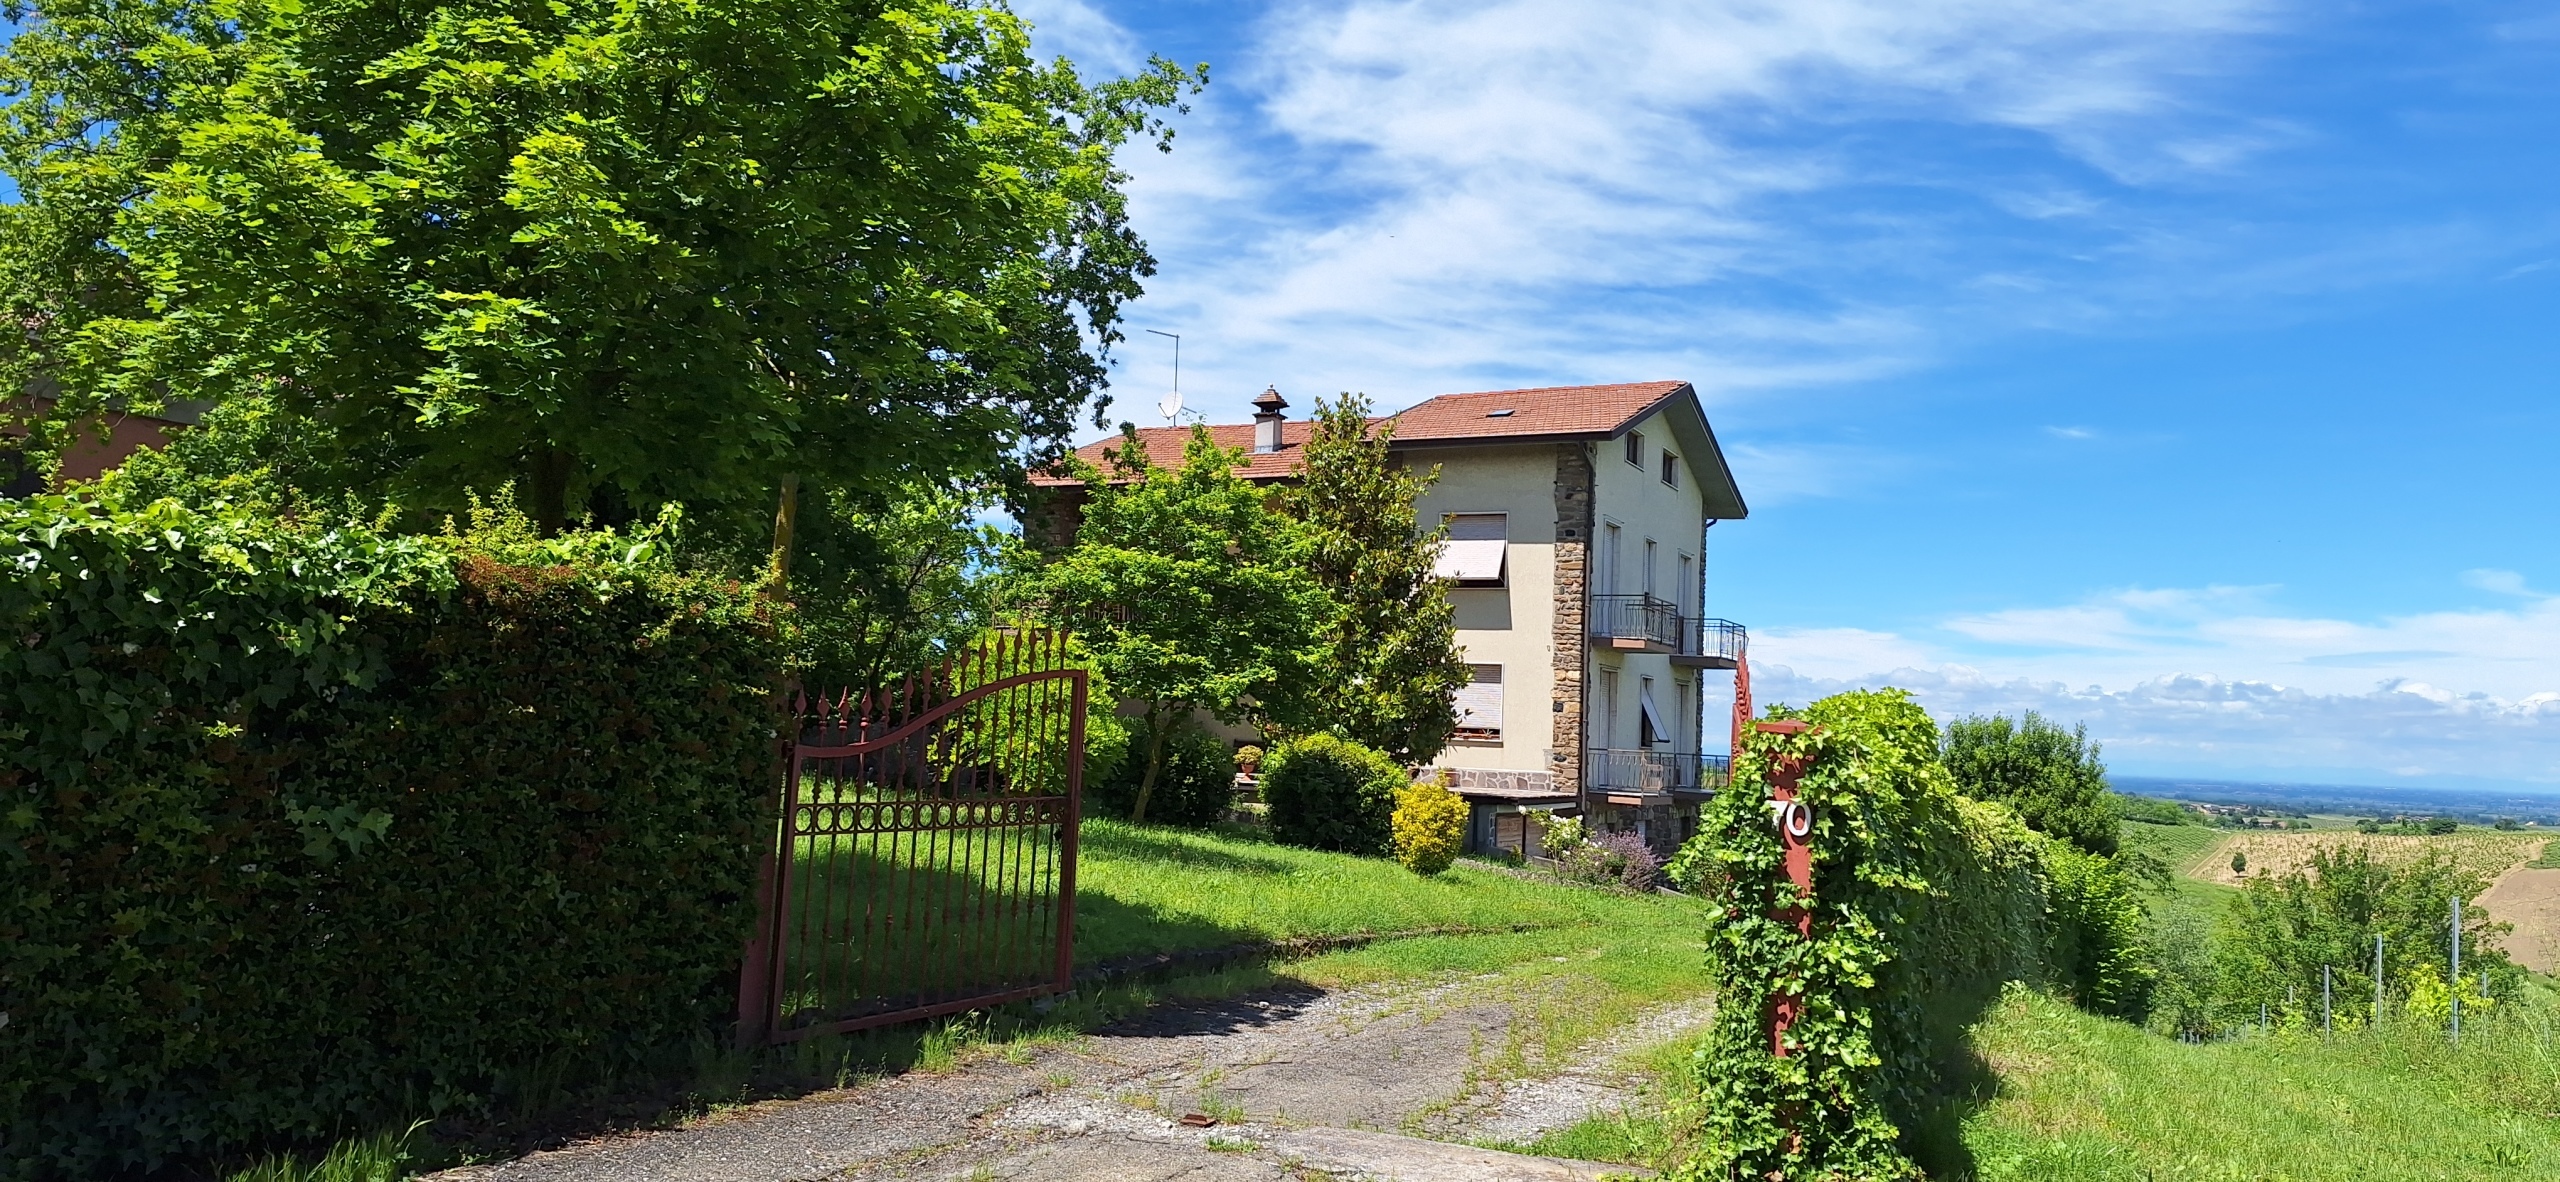 Casa indipendente da ristrutturare in periferia, Ziano Piacentino